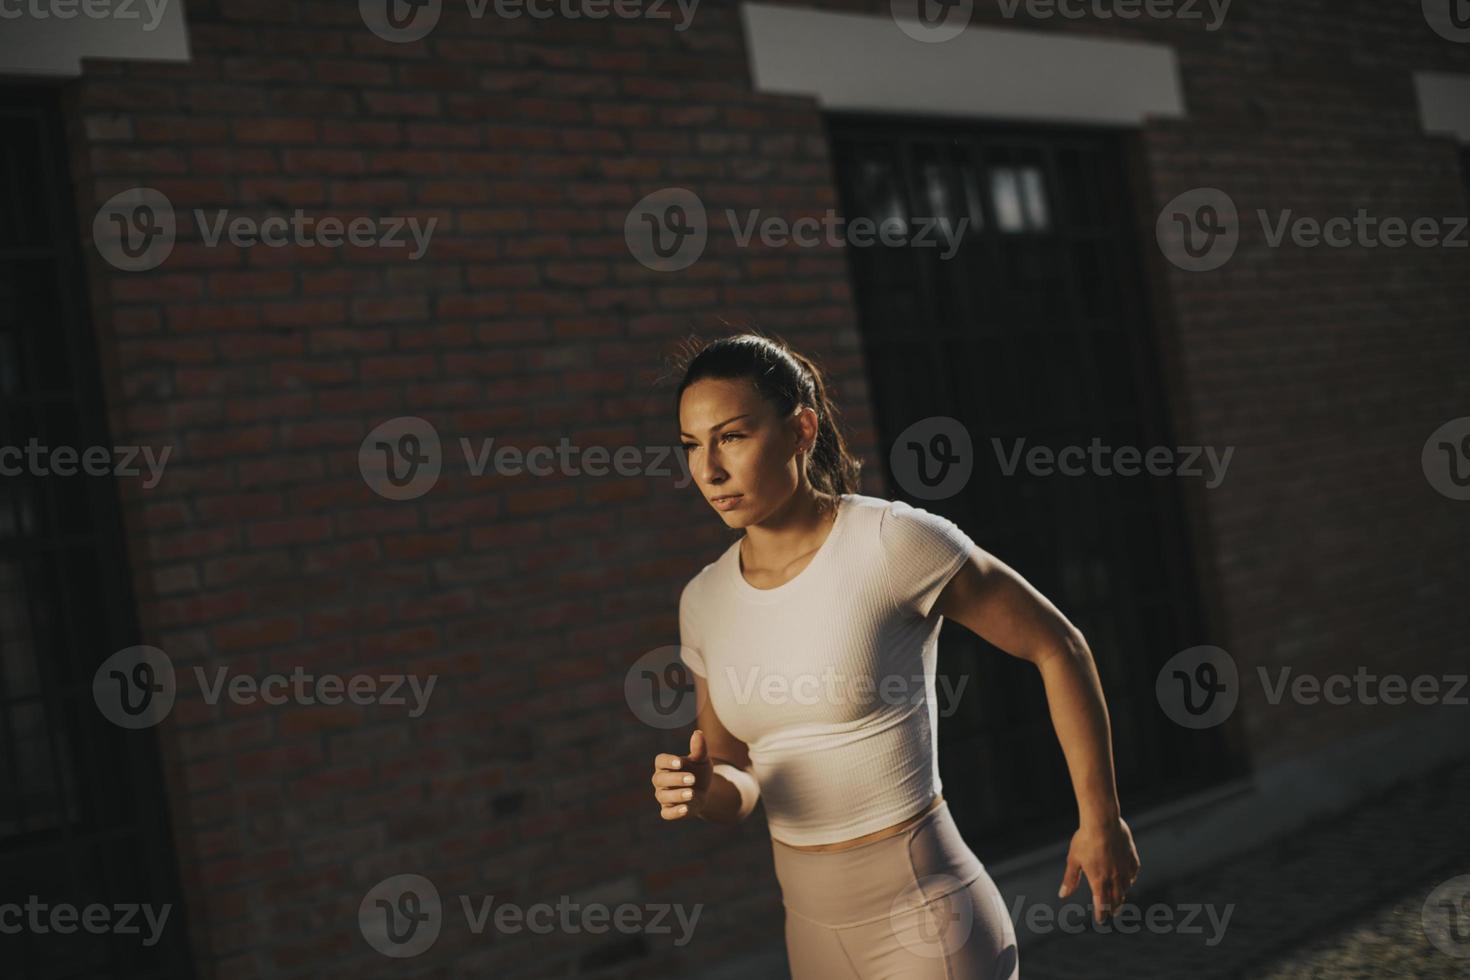 jeune femme qui court dans la rue photo